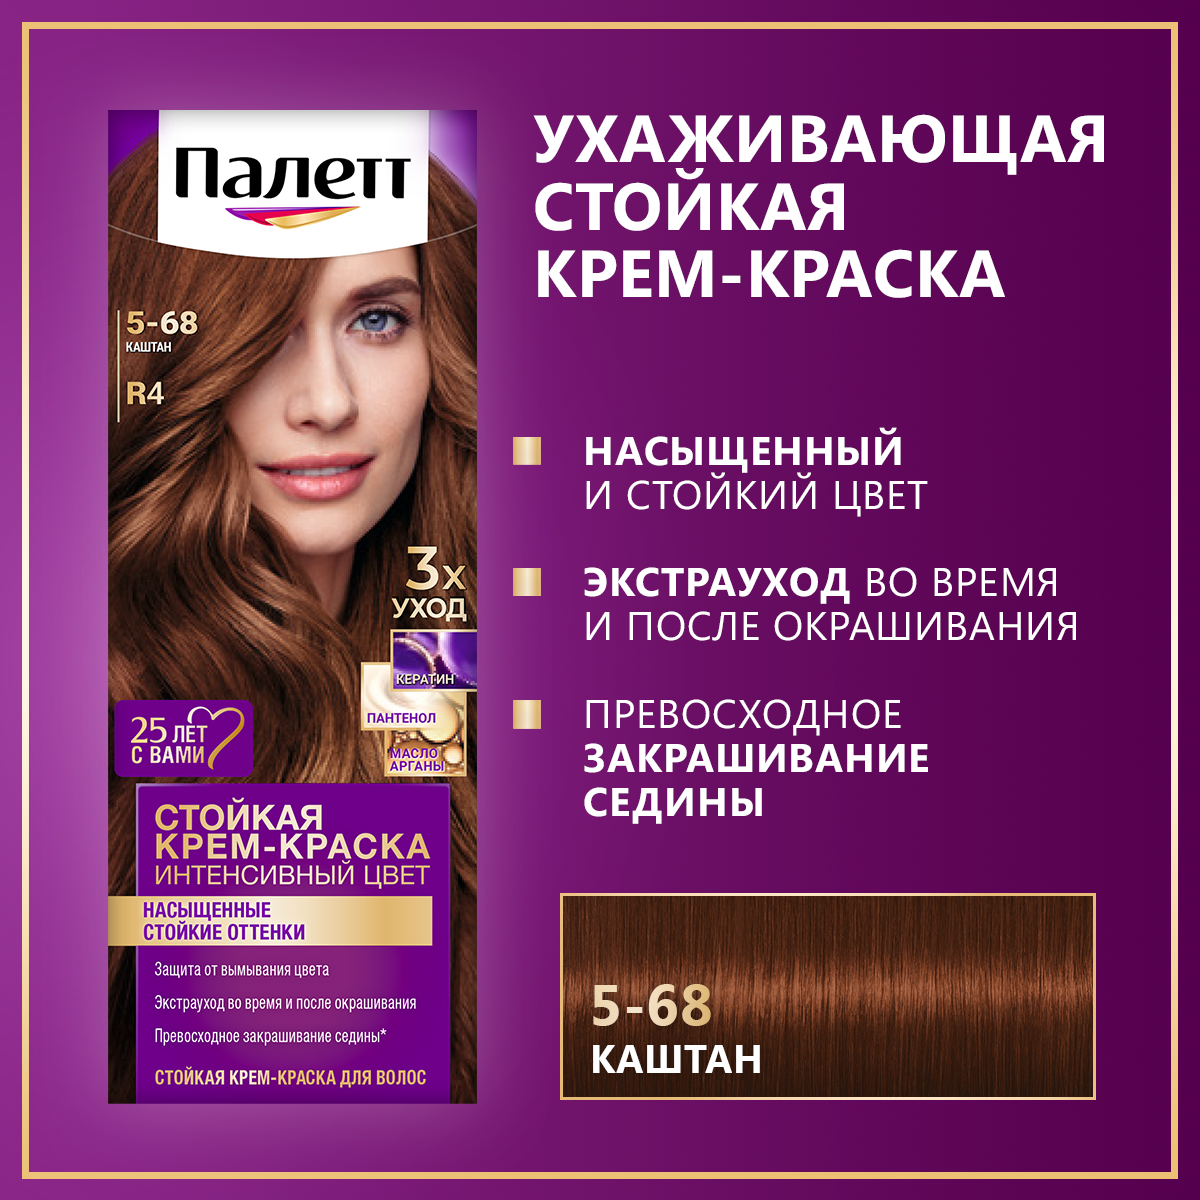 Palette Интенсивный цвет Стойкая крем-краска для волос, R4 5-68 Каштан